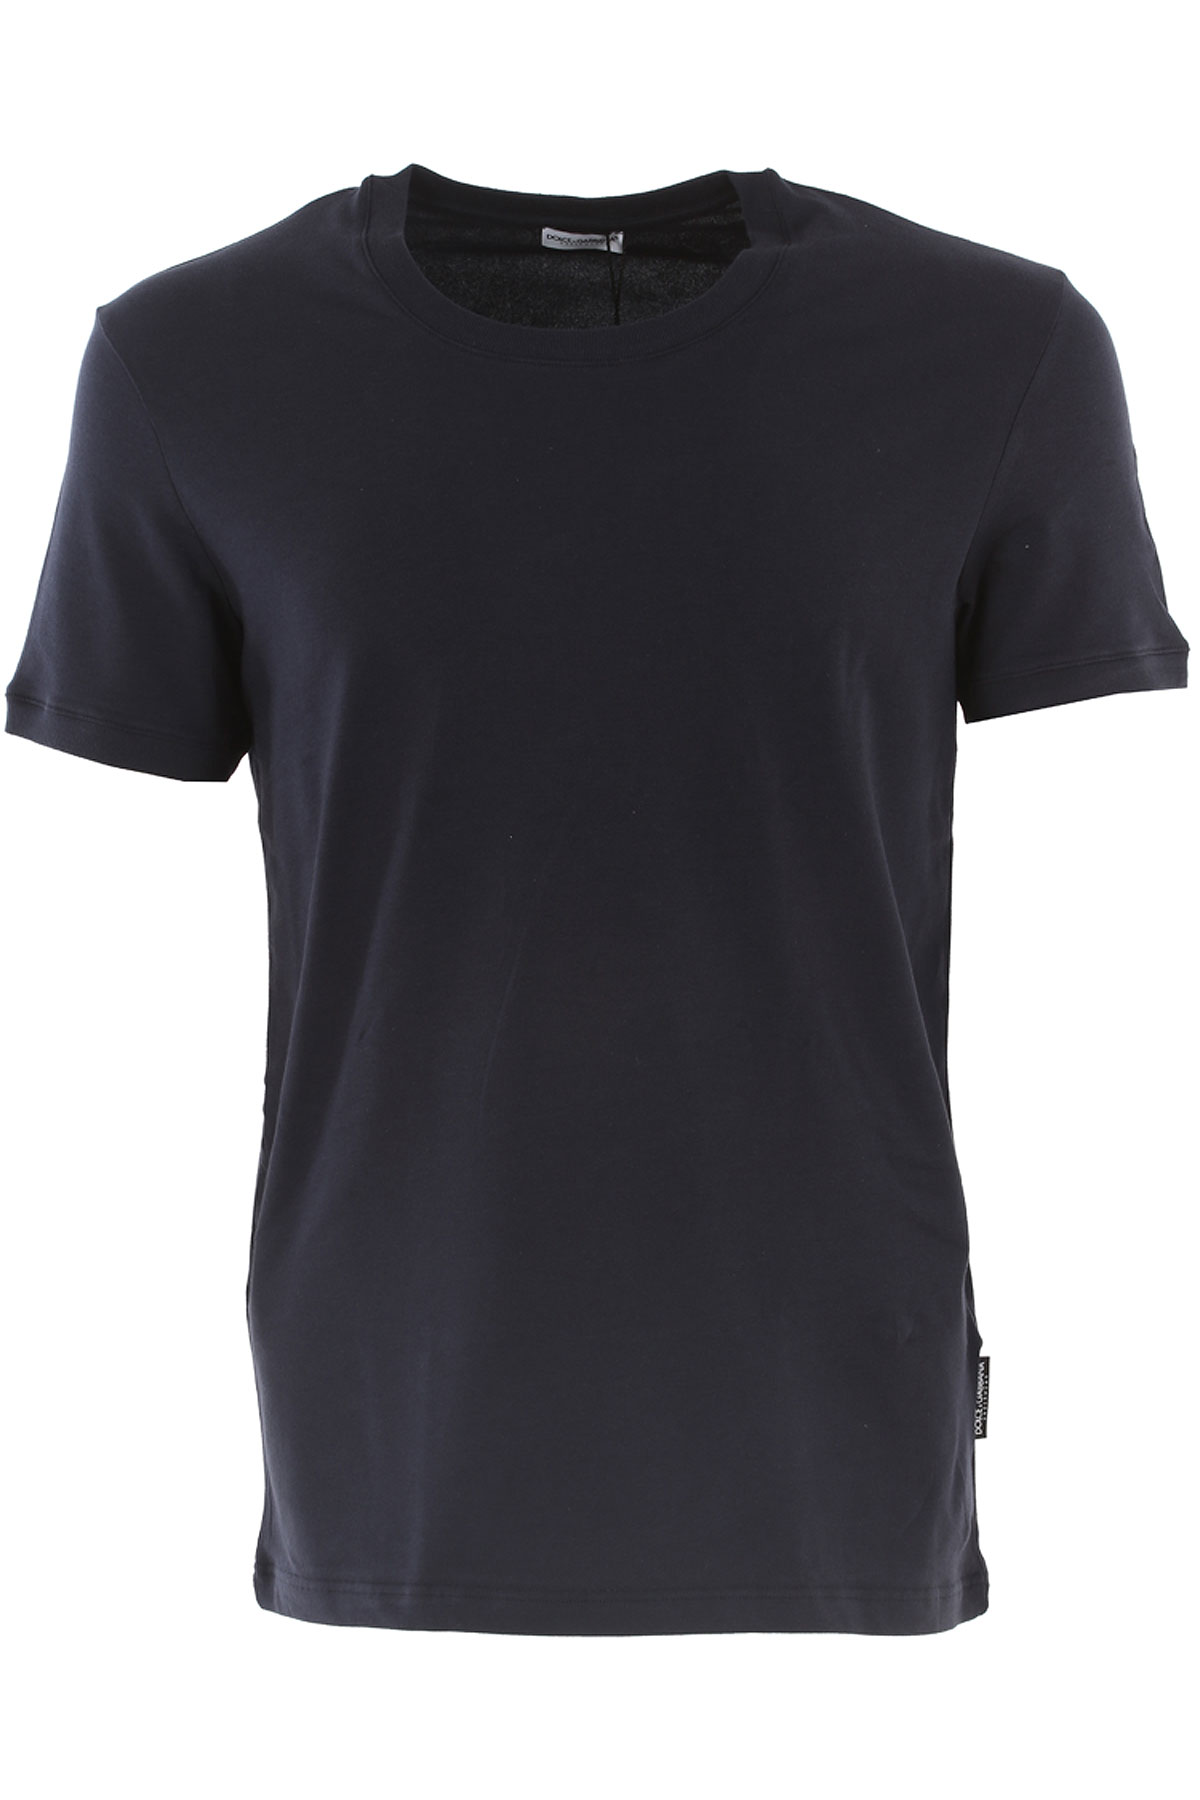 Dolce & Gabbana T-shirt Homme, Bleu marine, Coton, 2017, S XL